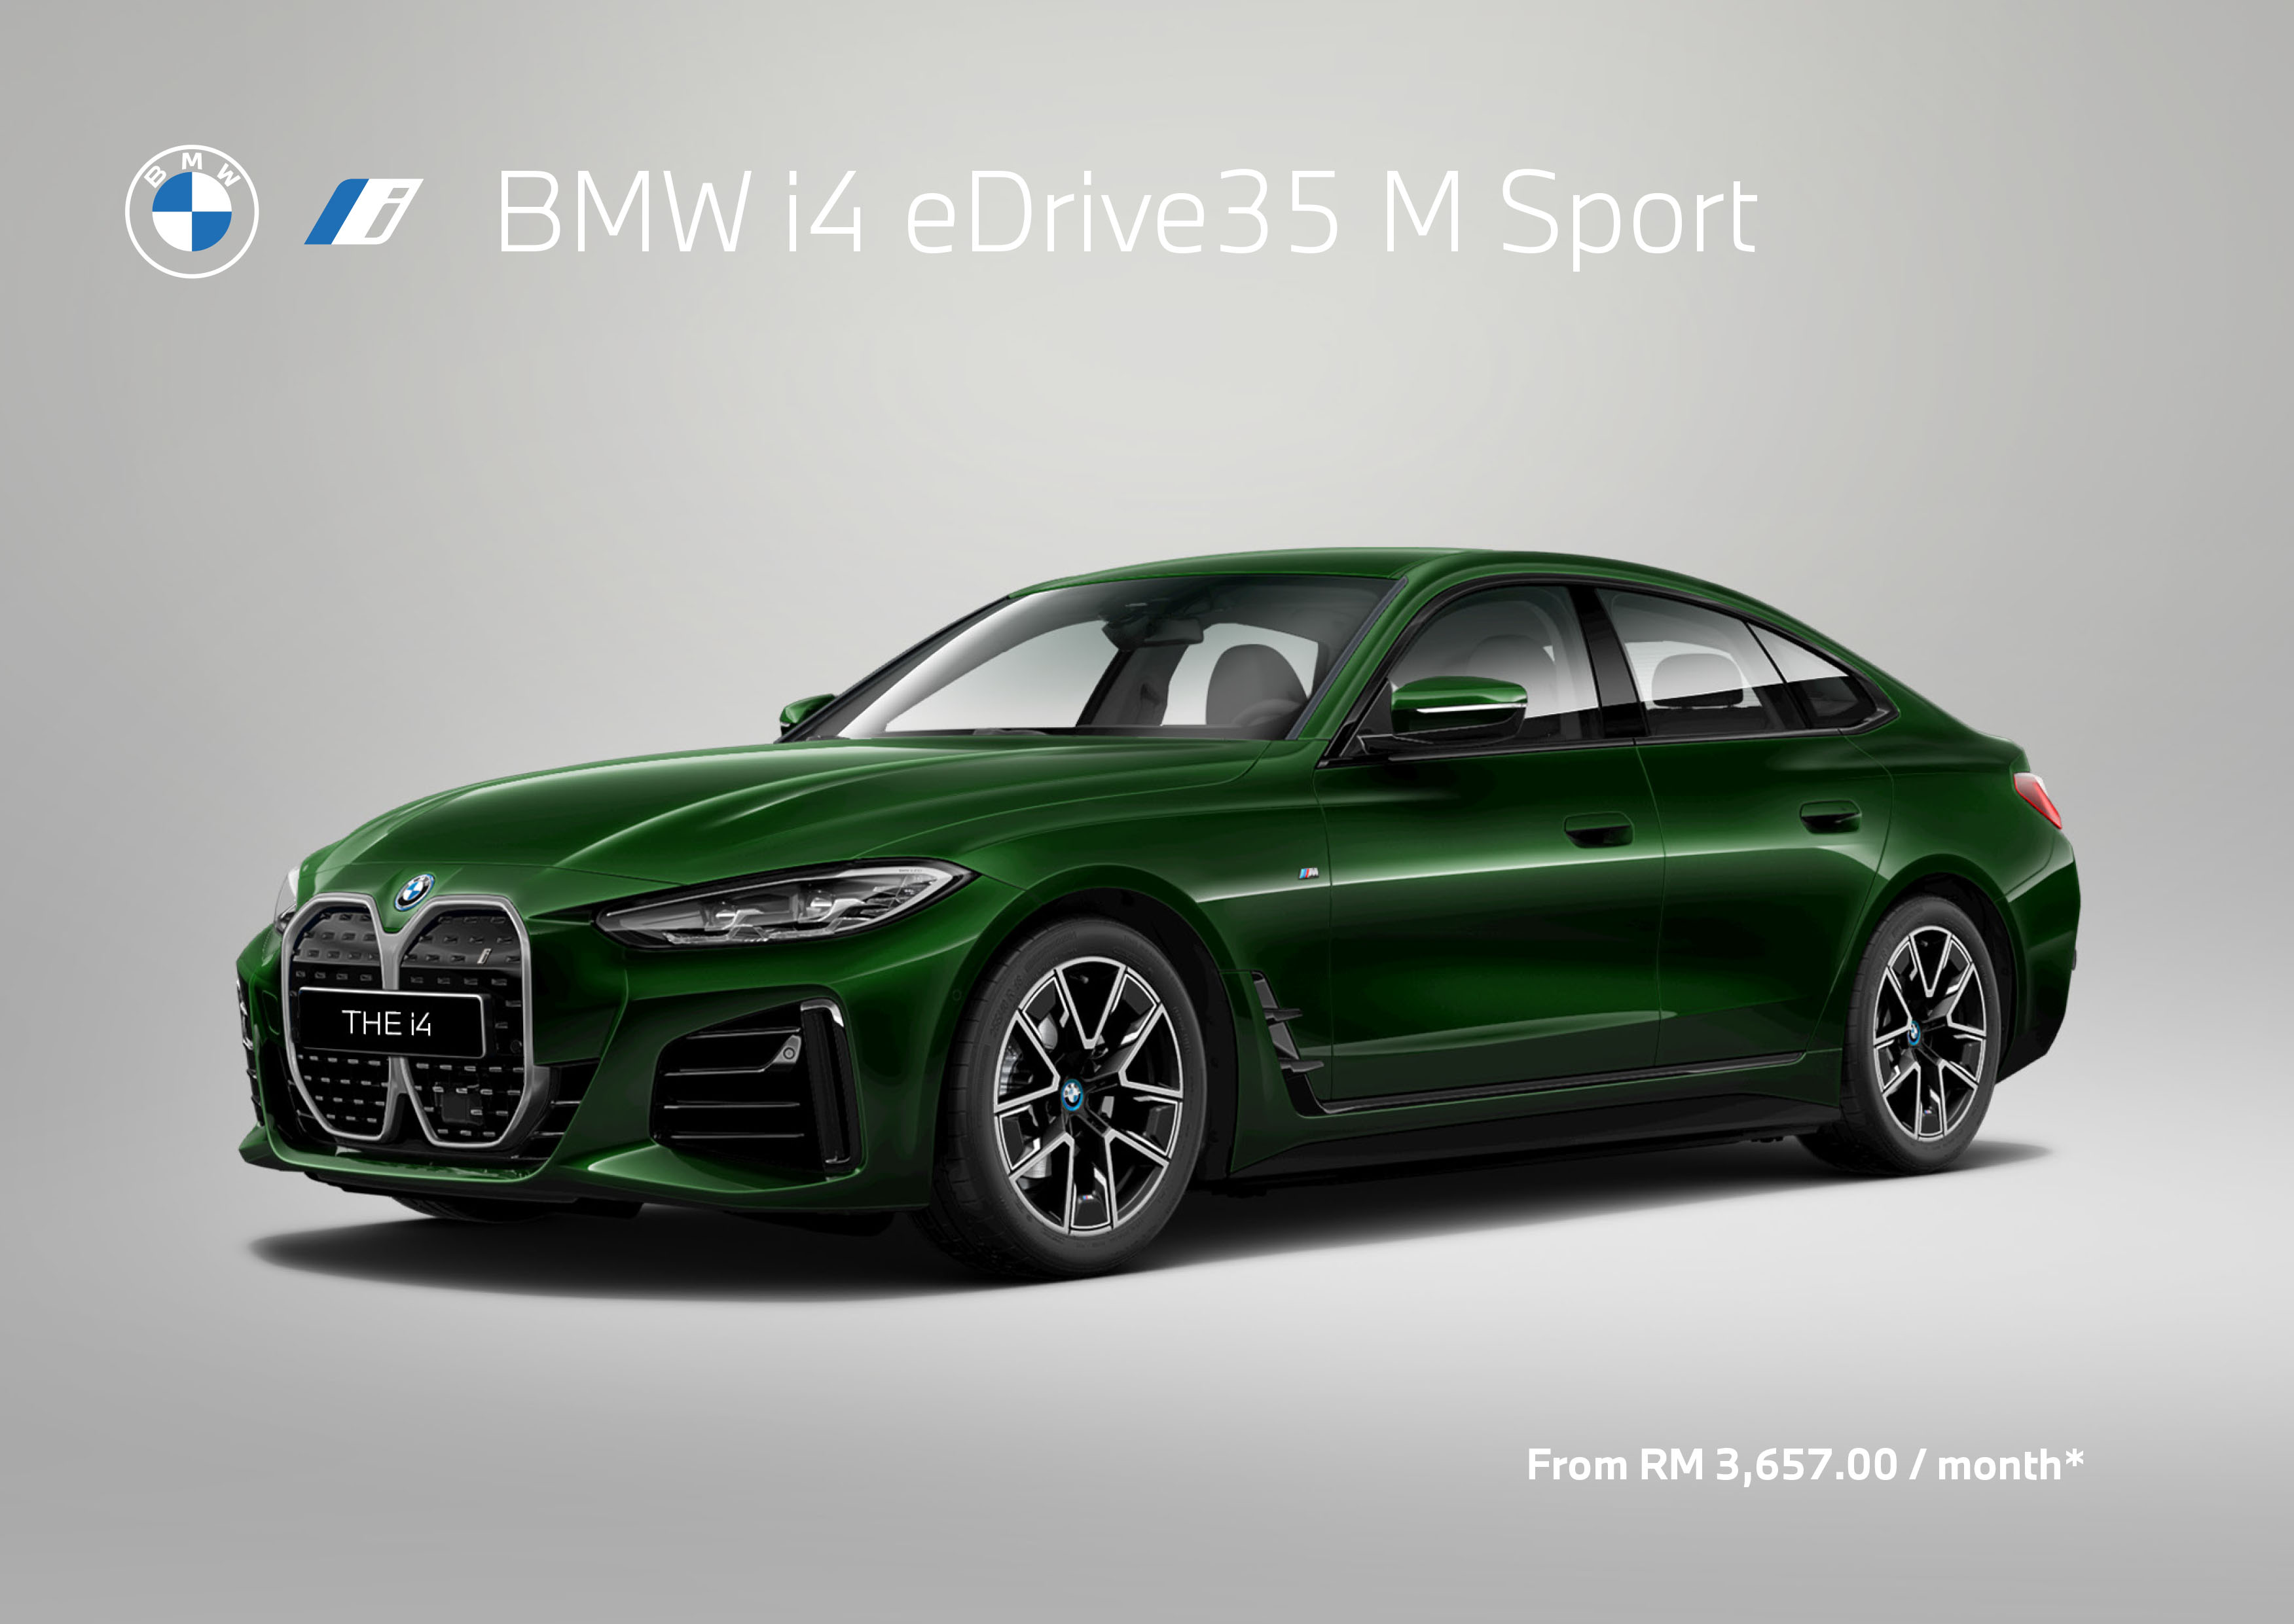 BMW_specs_sheet_i4 eDrive35 M Sport_PM_03